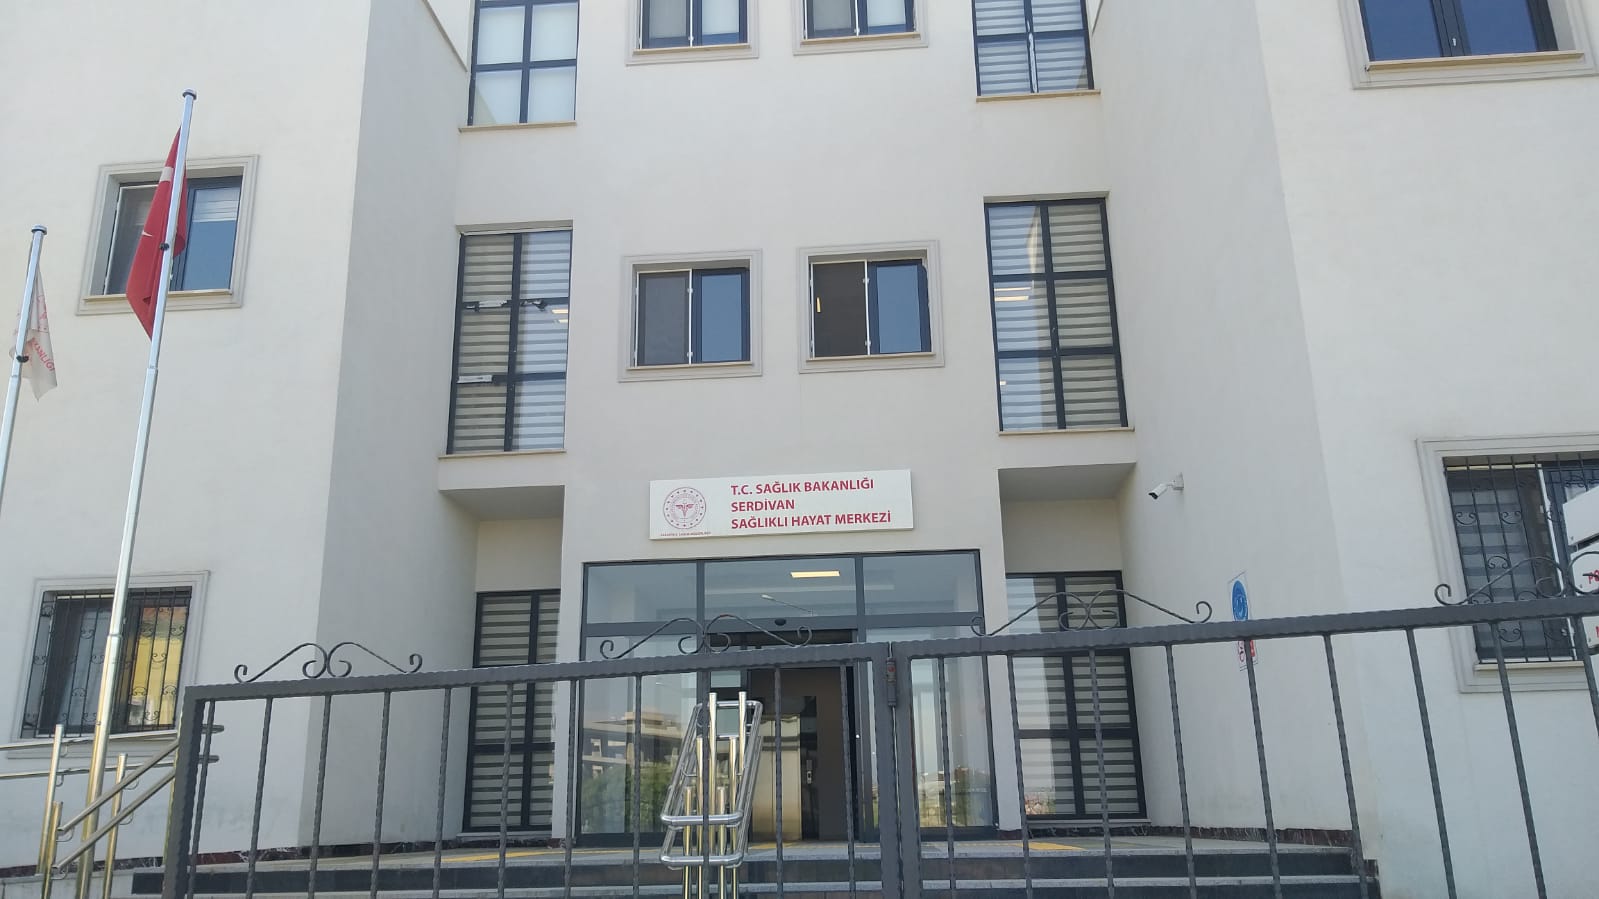 Serdivan Sağlıklı Hayat Merkezi - KETEM Yeni Binasında Hizmete girdi